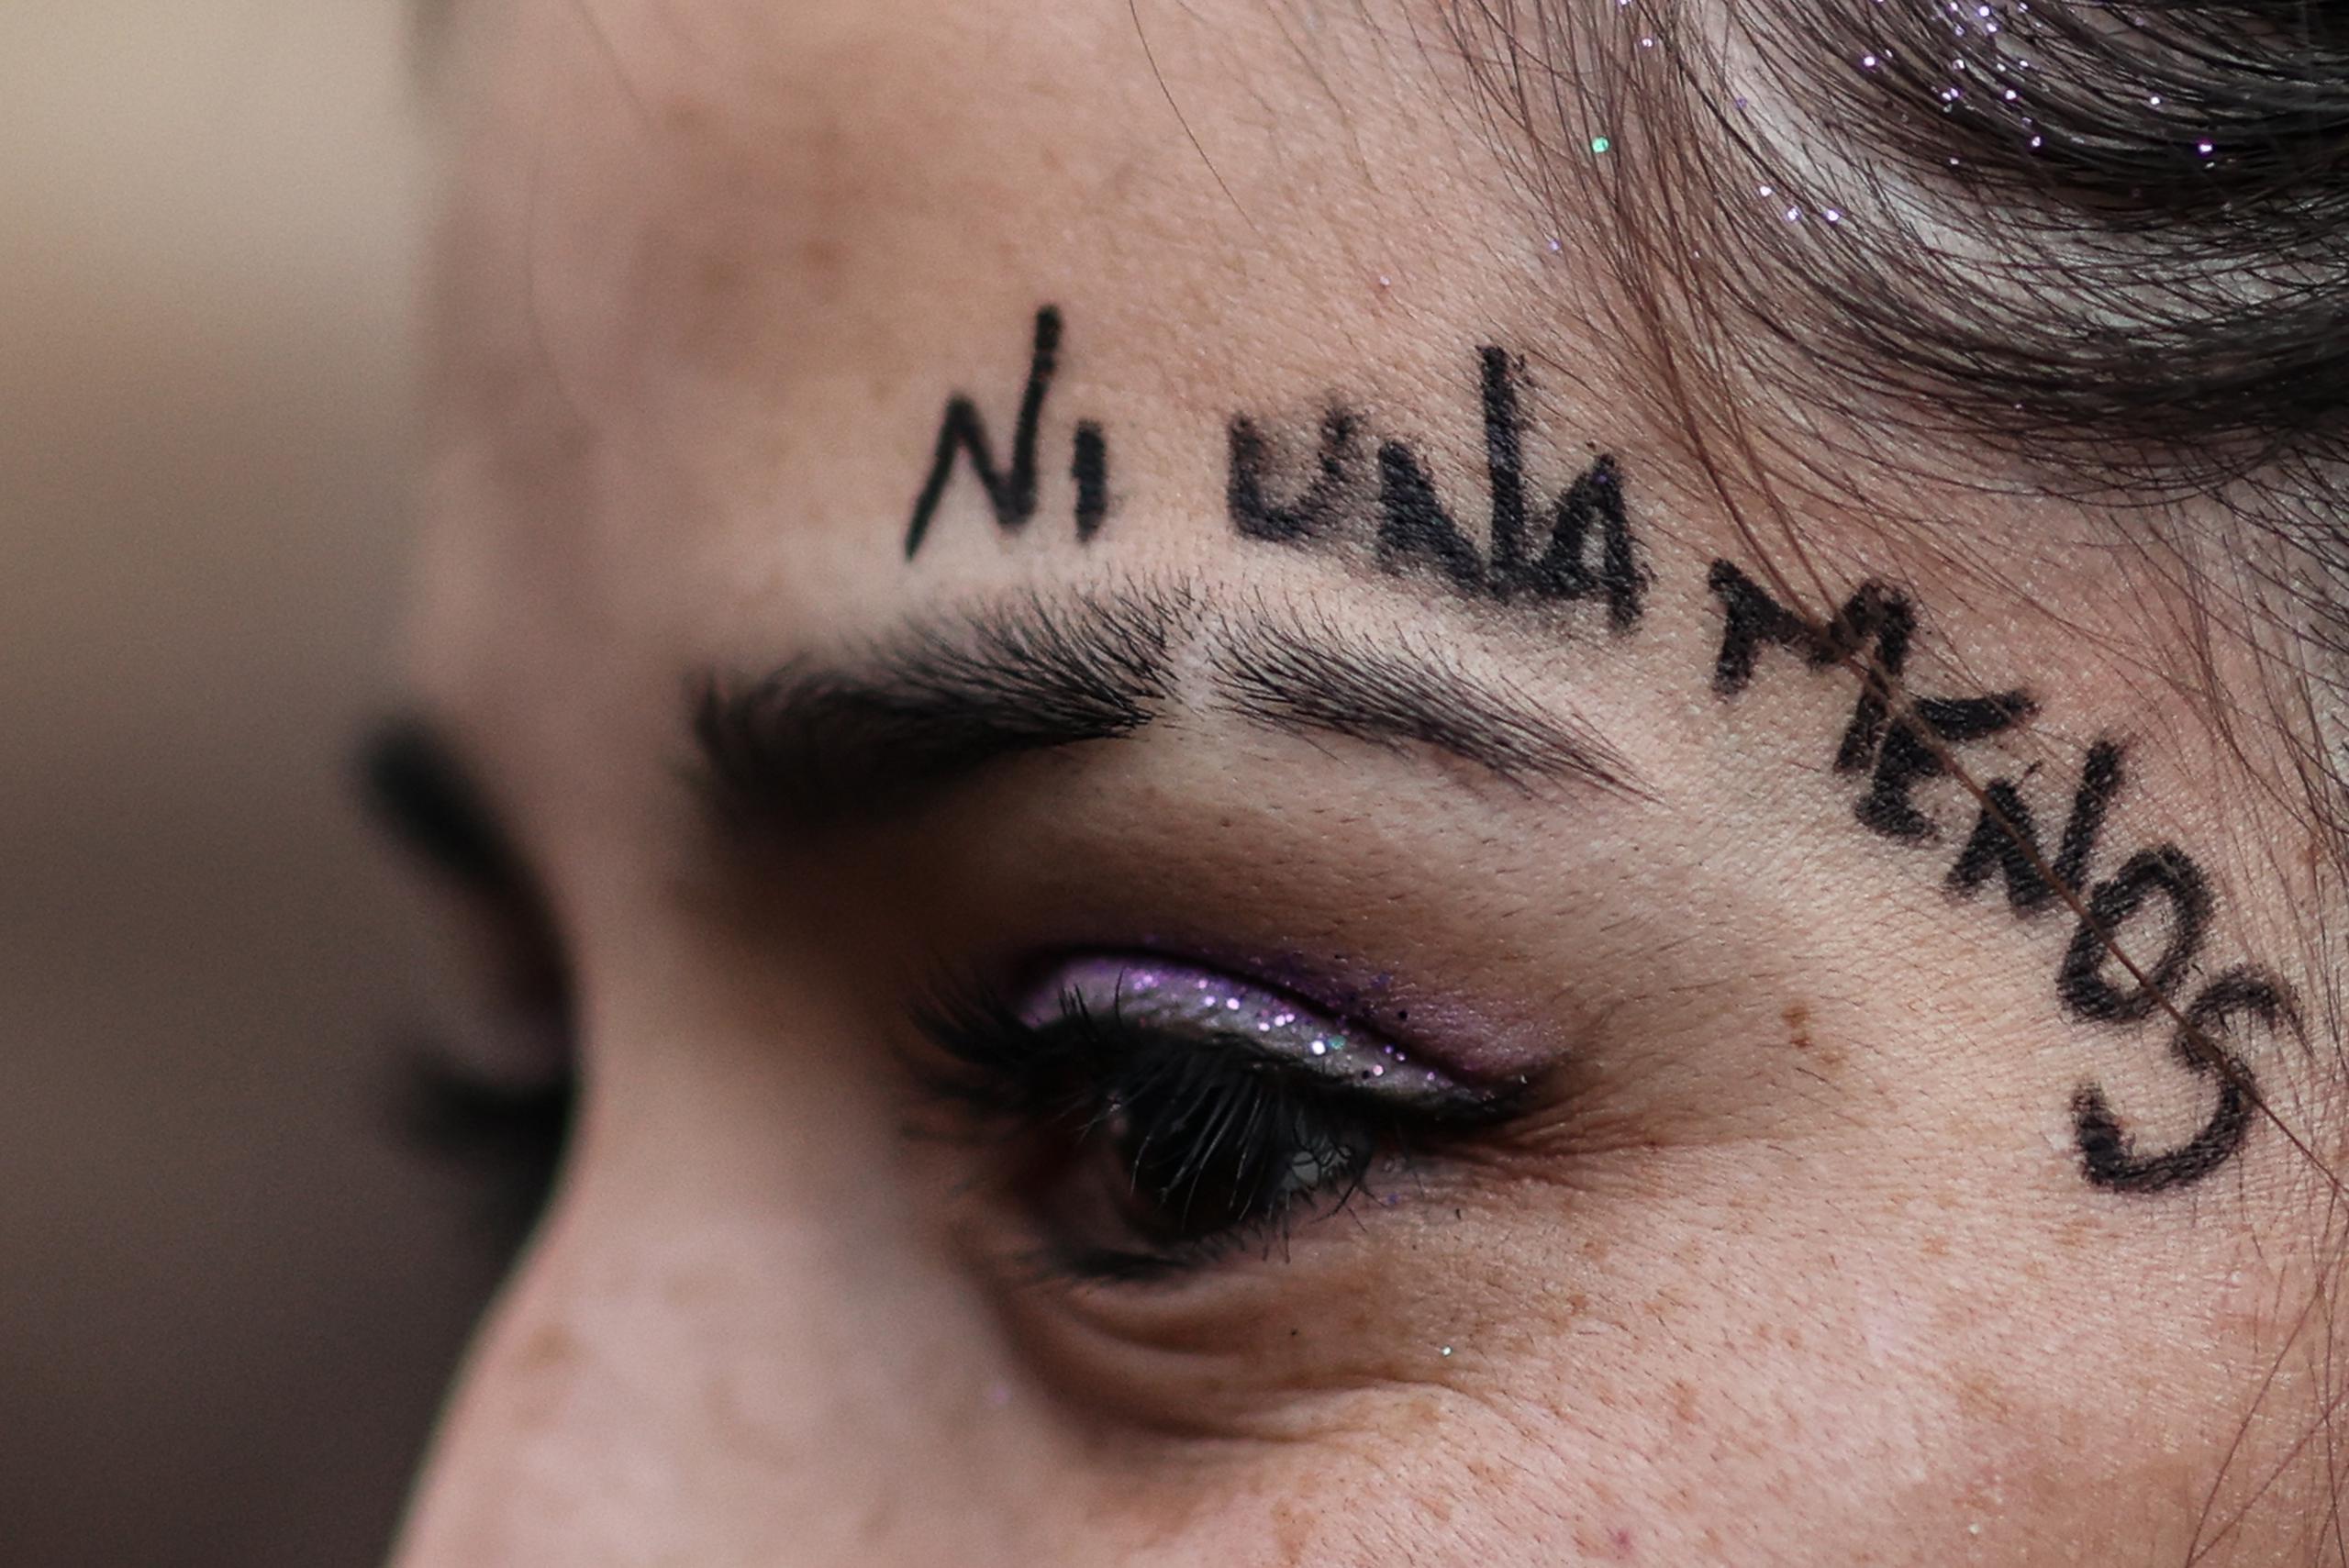 La ONU indica que una de cada tres mujeres y niñas siguen siendo víctimas de violencia.